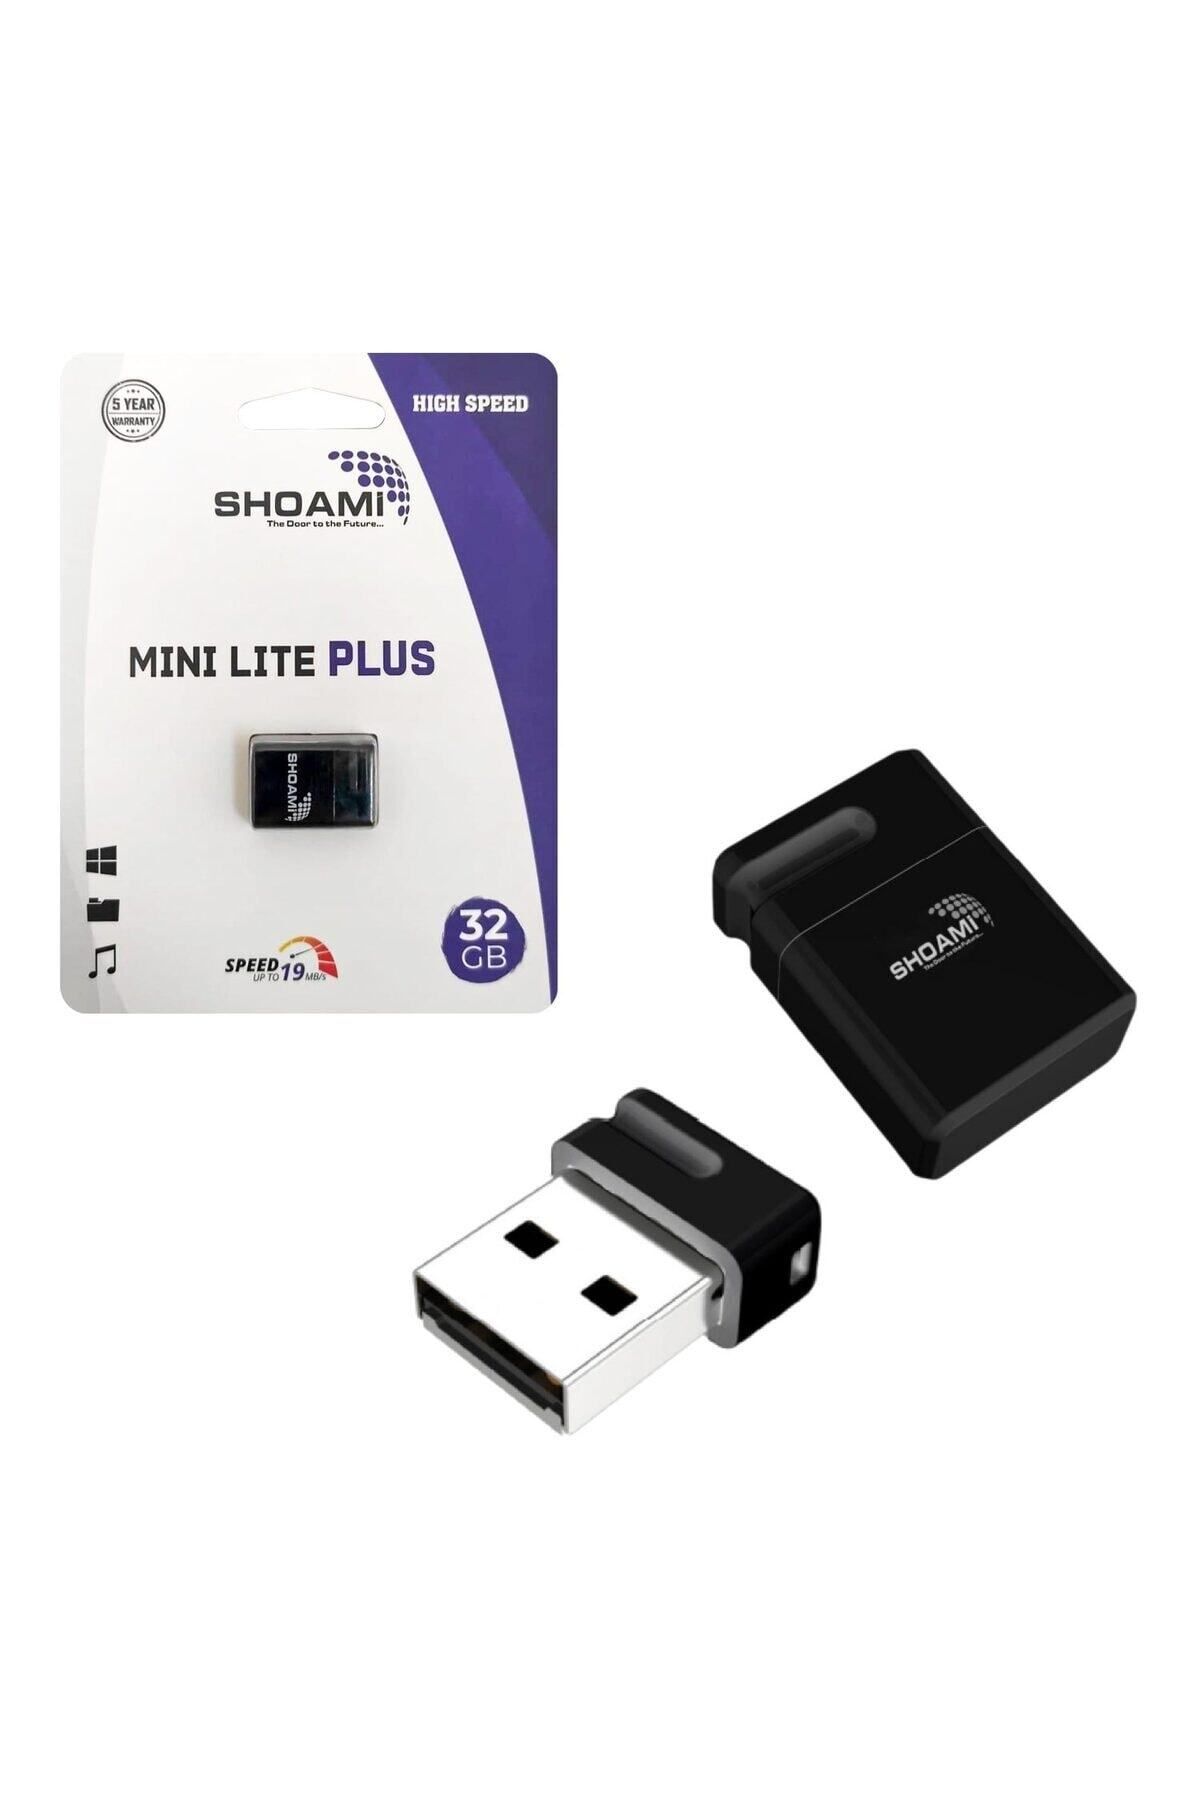 Concord USB FLASH BELLEK 32GB MİNİ LITE PLUS SHOAMİ SH-UM32 Uyumlu